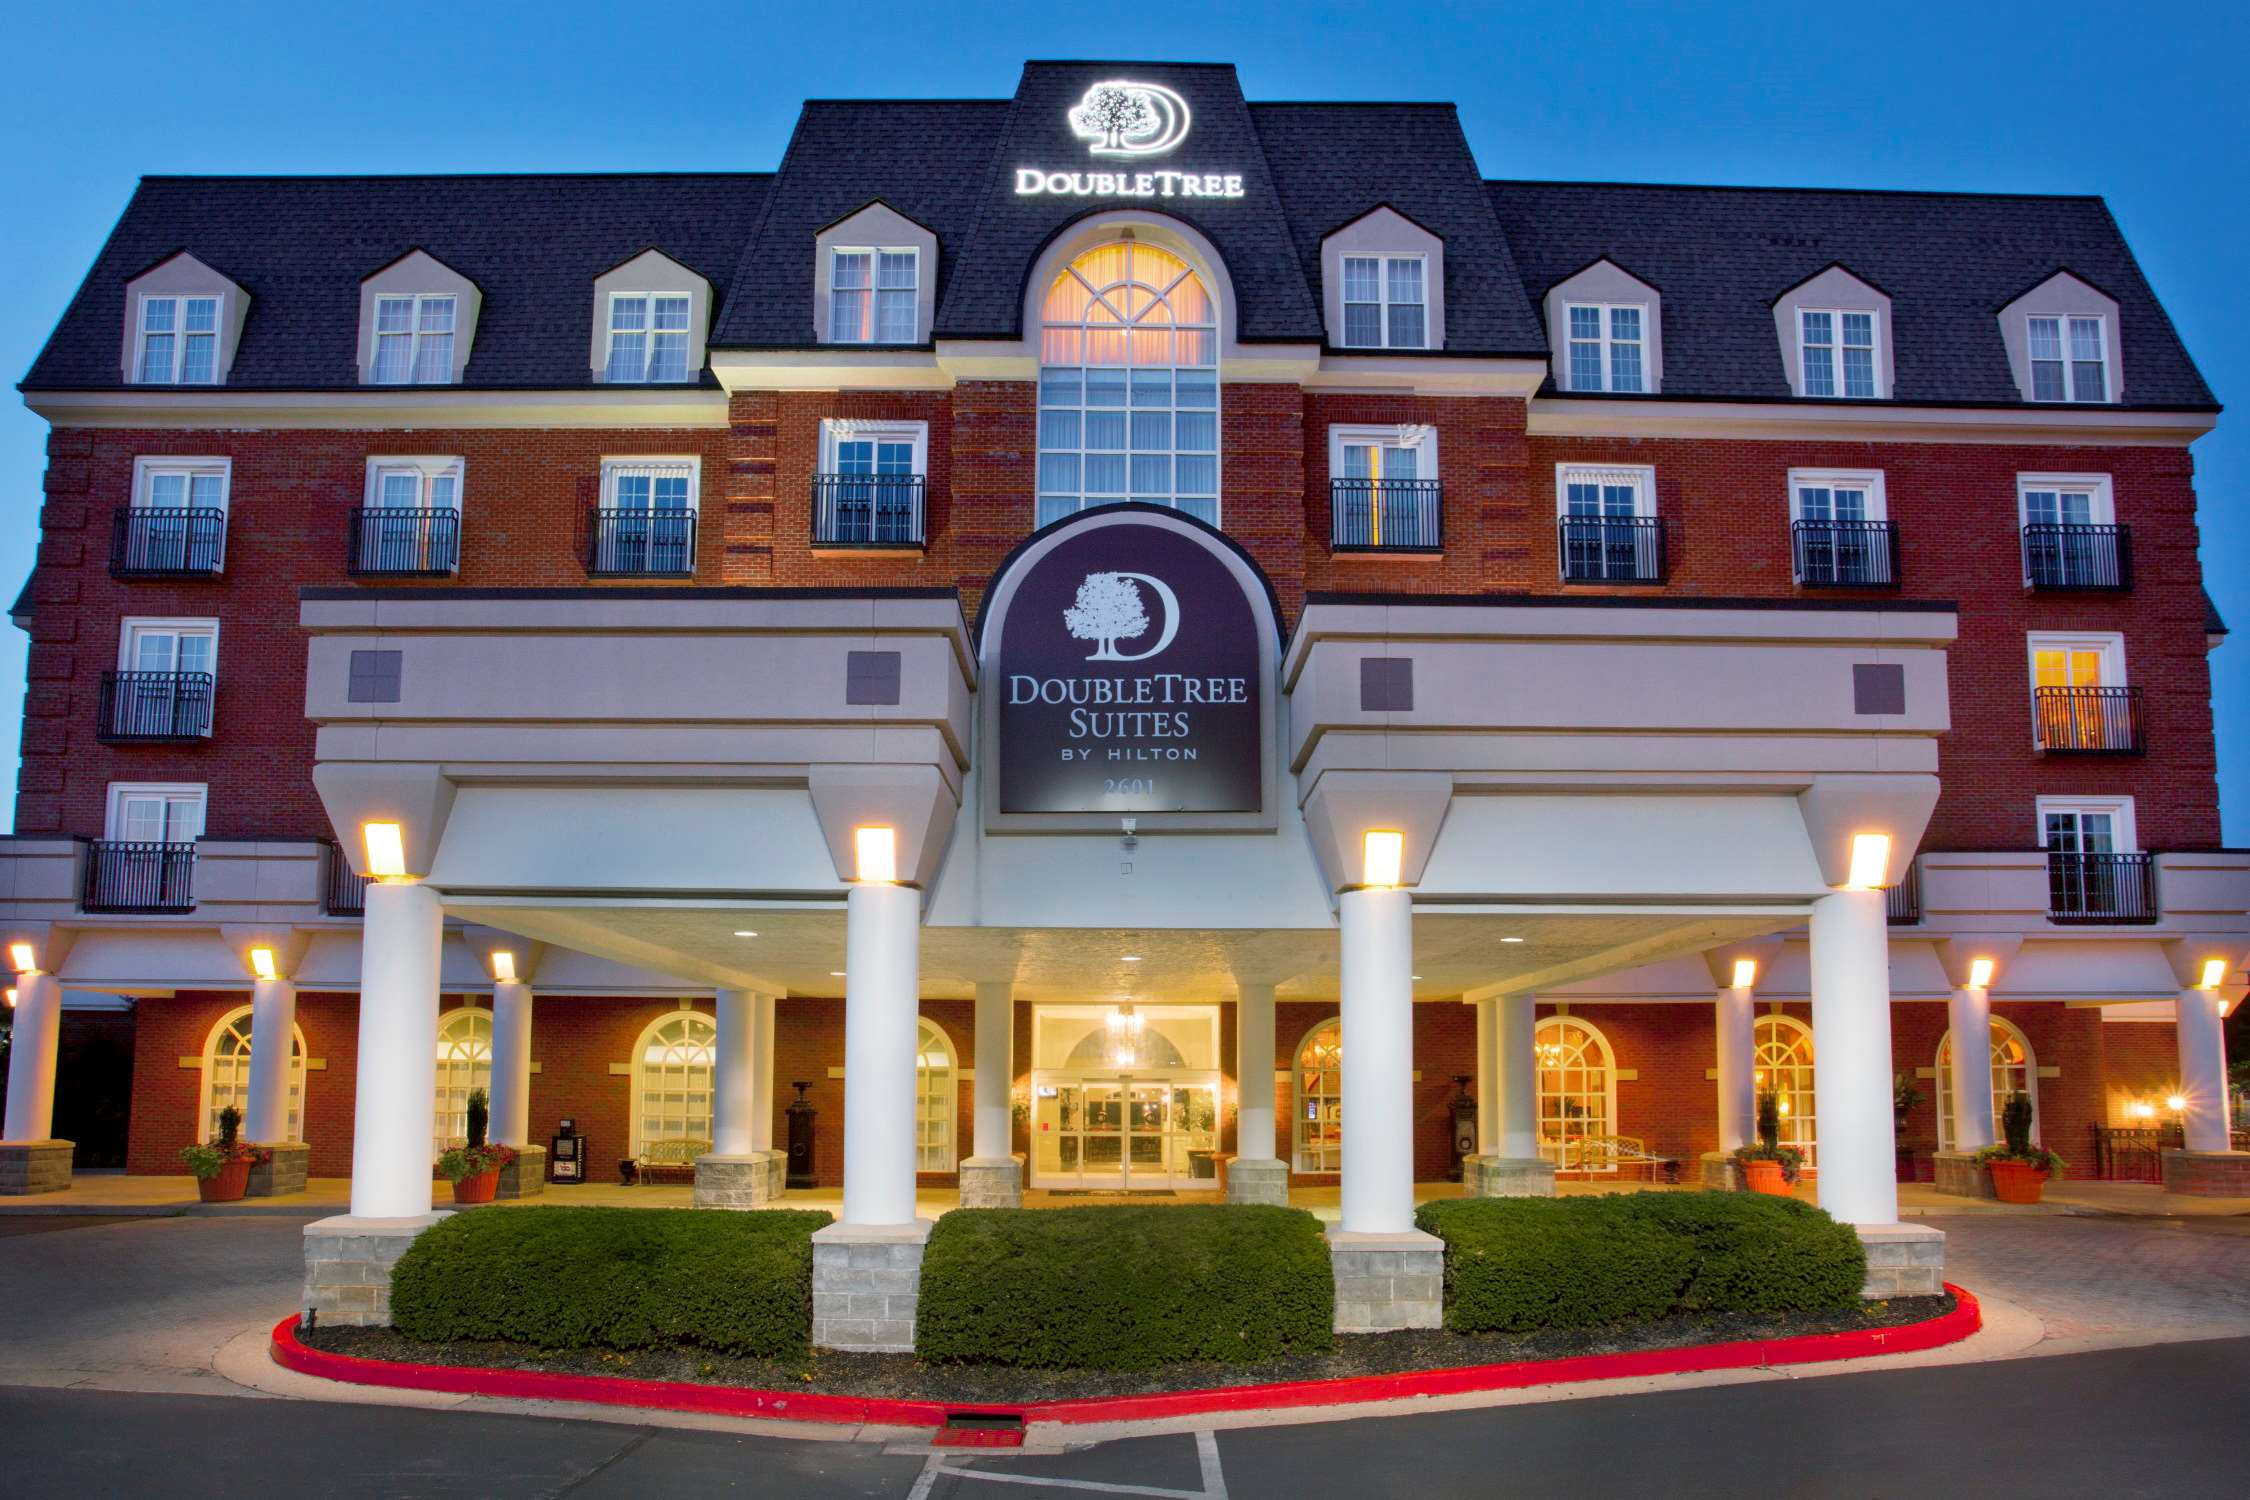 DoubleTree Suites by Hilton Hotel Lexington 2601 Richmond Road